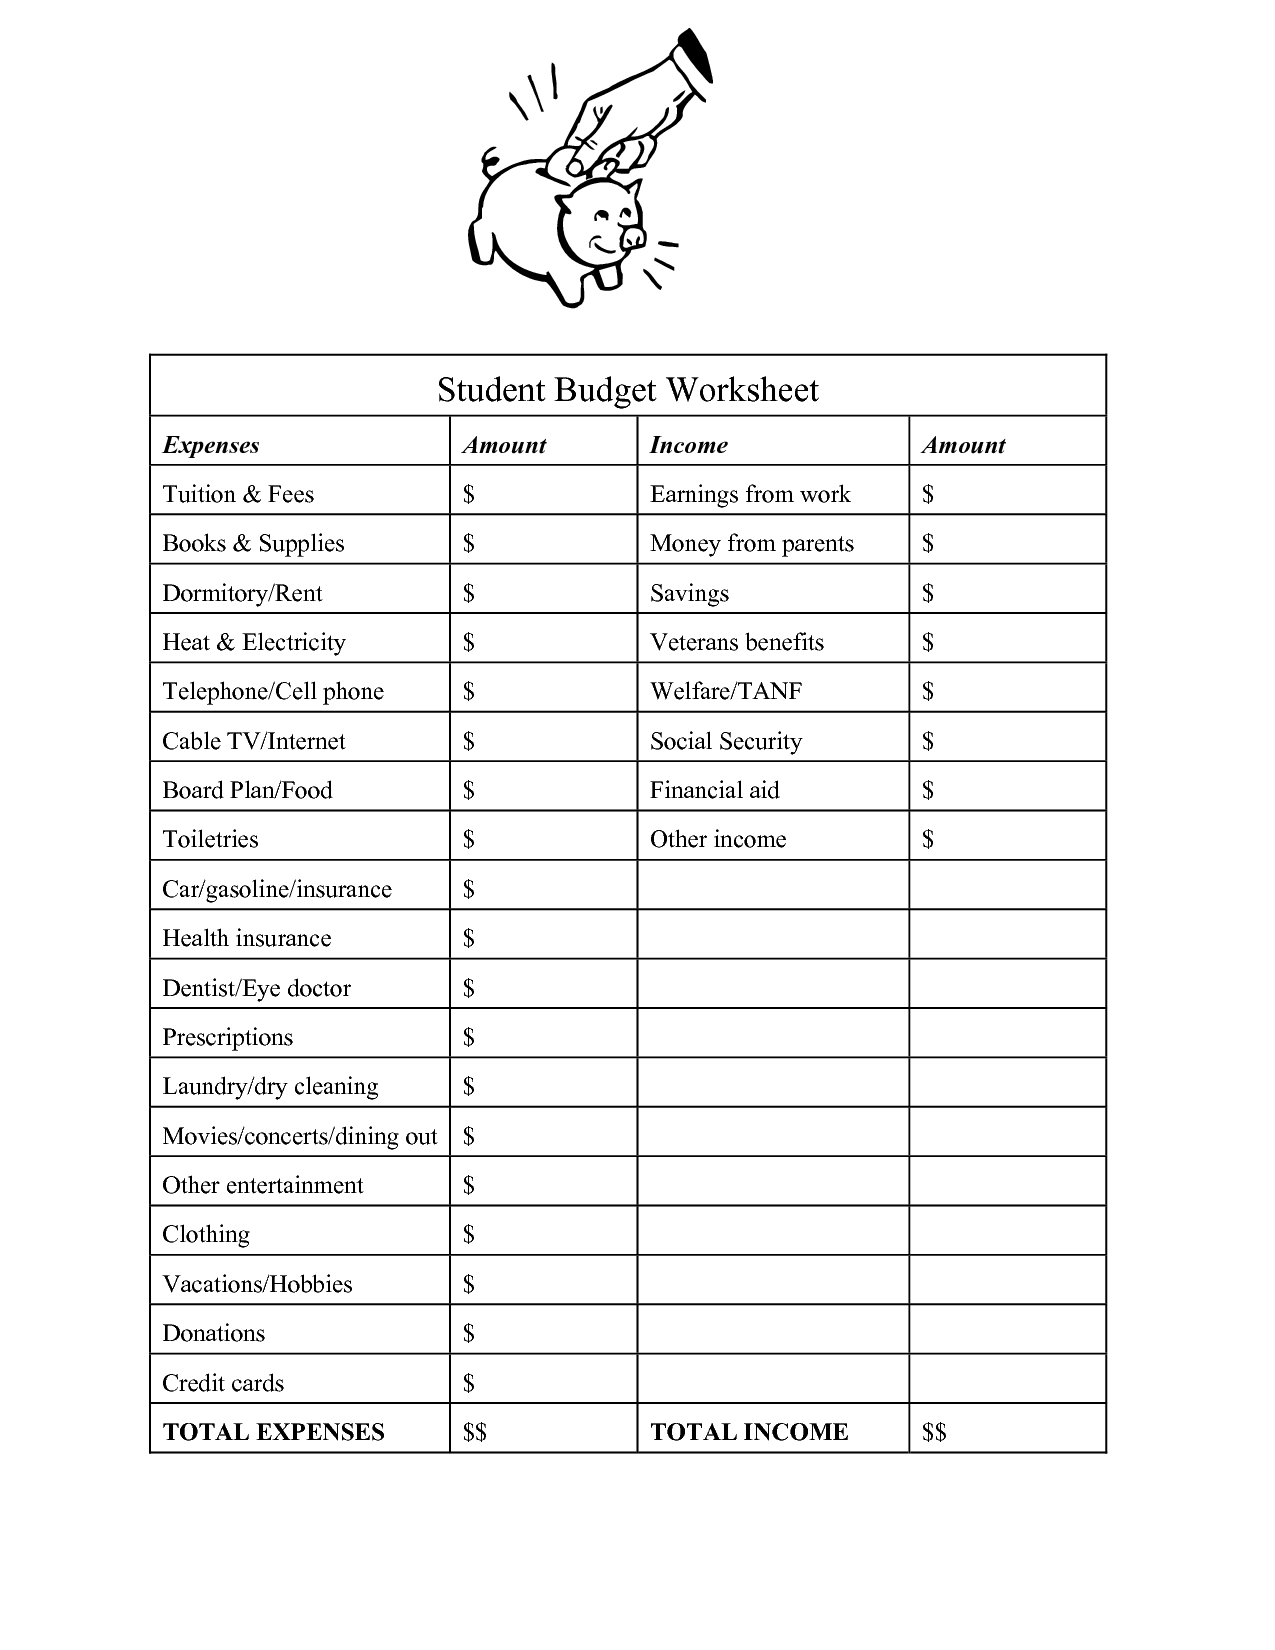 College Student Budget Worksheet Image